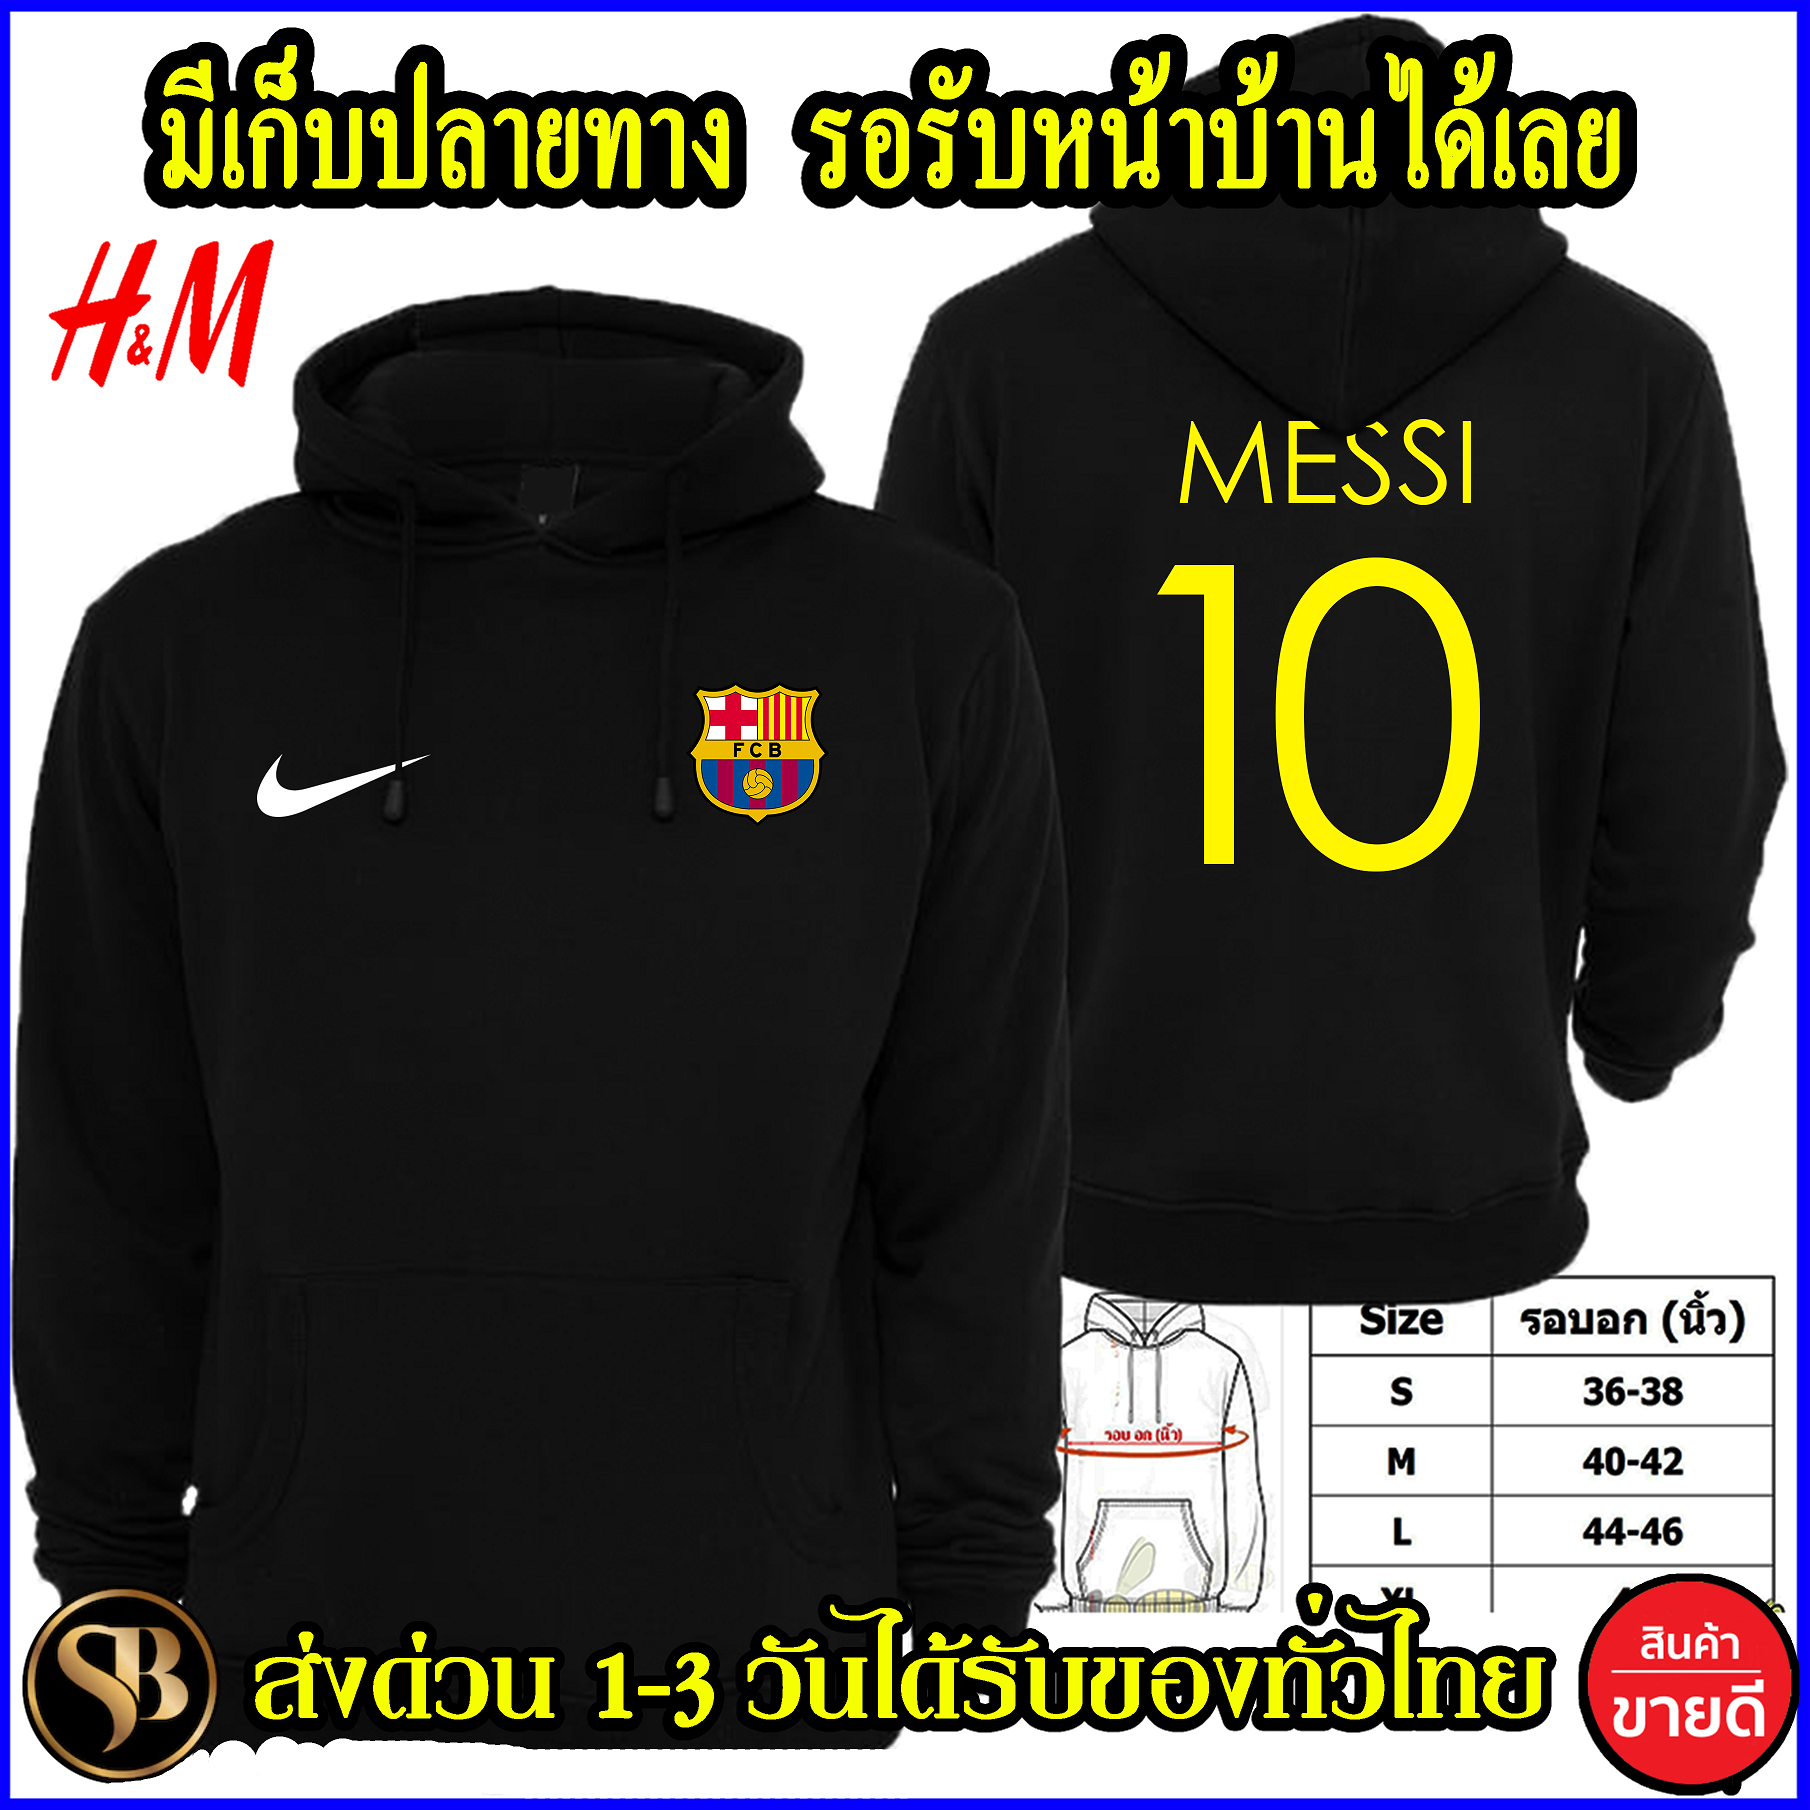 บาร์เซโลนา เสื้อฮู้ด Messi งาน H&M โลโก้สีสด HOODIE แบบซิป สวม สกรีนแบบเฟล็ก PU สวยสดไม่แตกไม่ลอก ส่งด่วนทั่วไทย